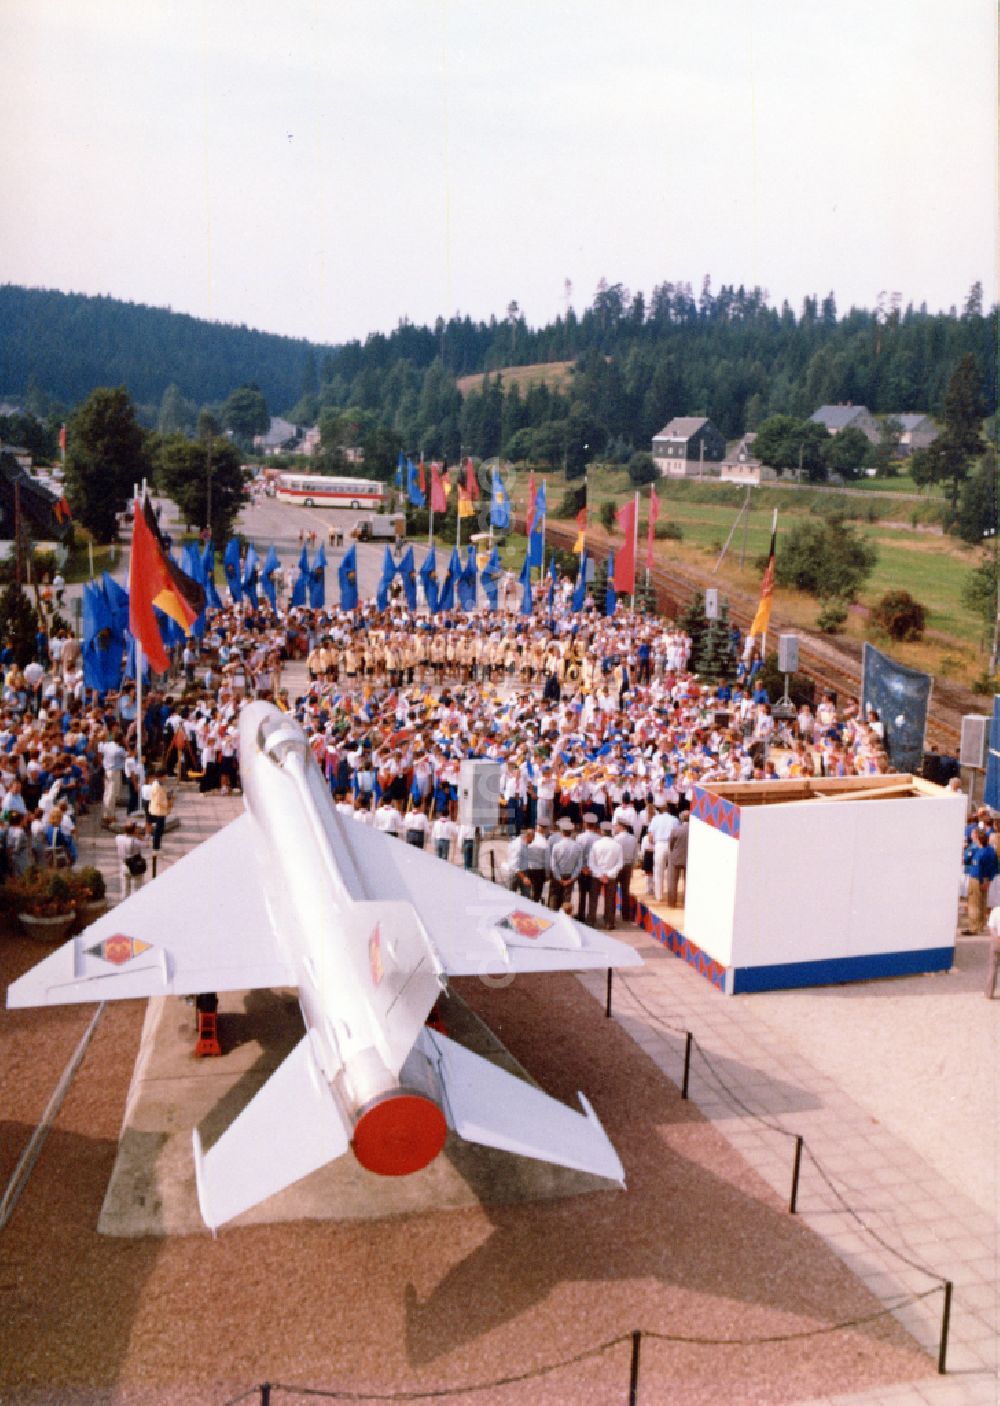 Morgenröthe-Rautenkranz: Pionier - Veranstaltung an der Raumfahrt- Gedenkstätte mit einer MiG-21 F-13 des ersten deutschen Kosmonauten Sigmund Jähn in Morgenröthe-Rautenkranz in Sachsen